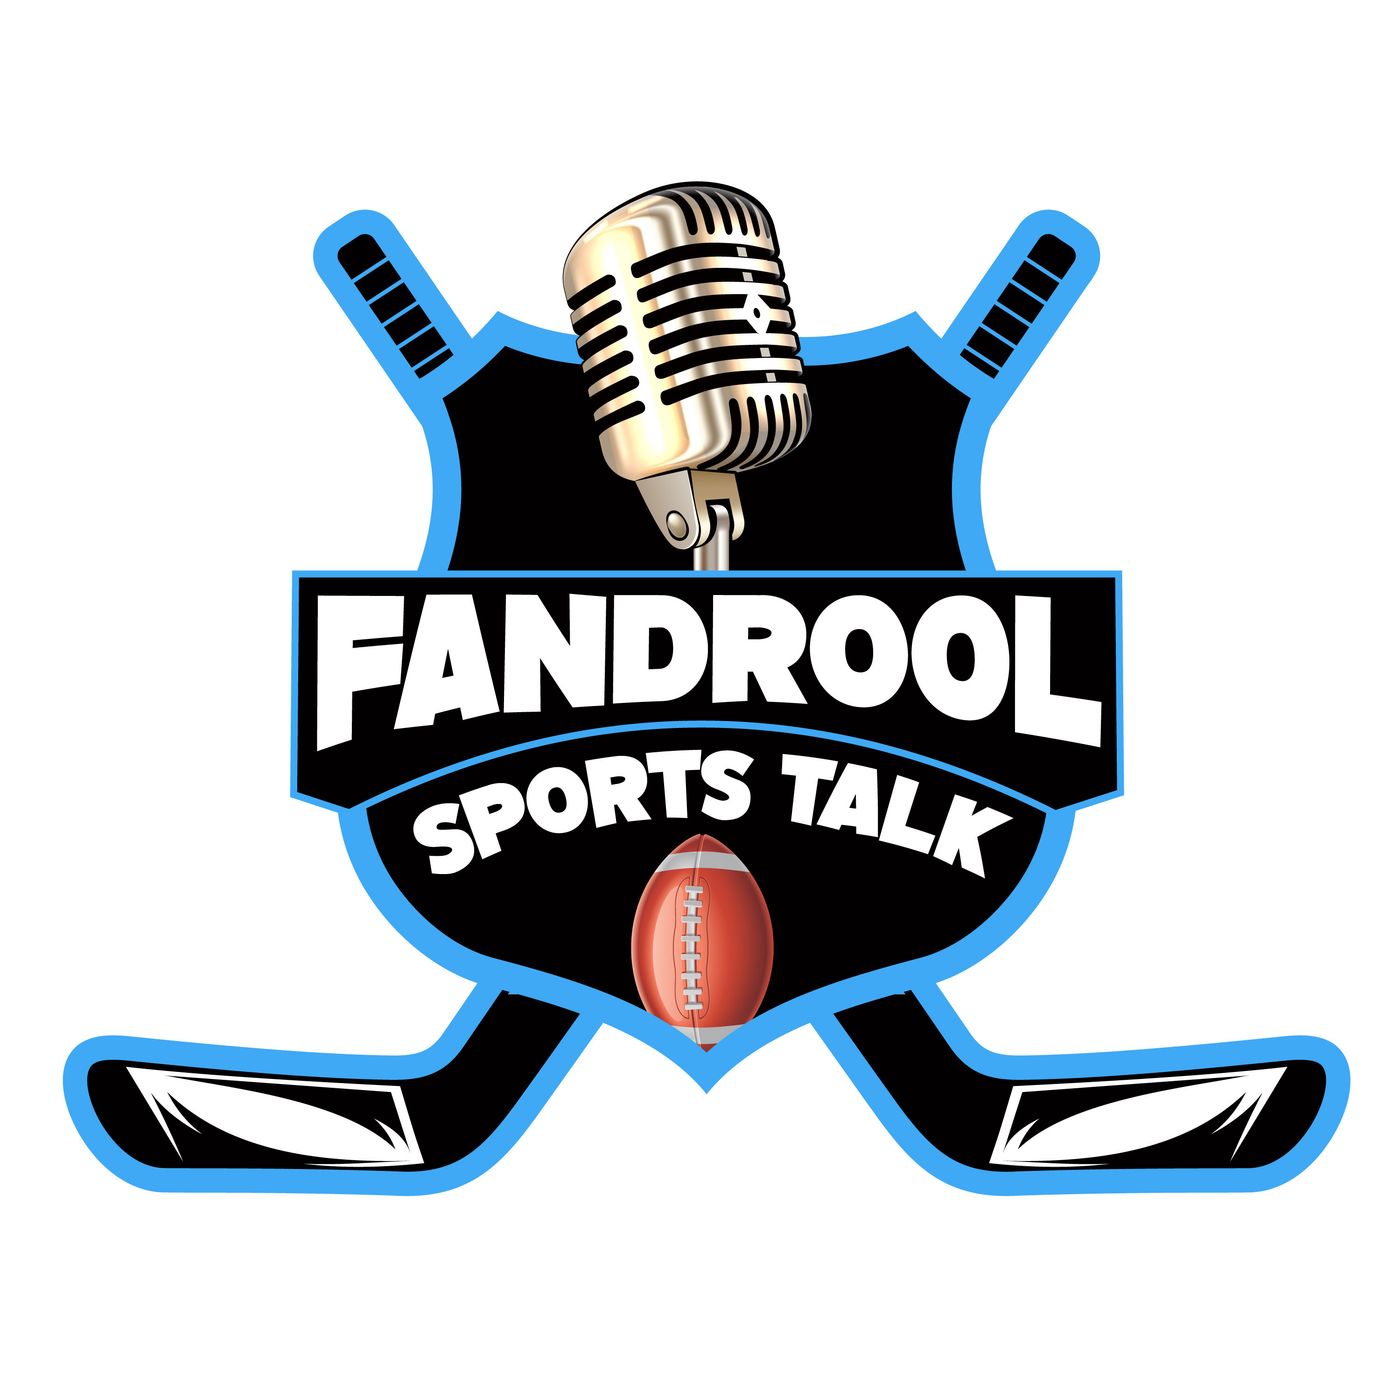 FanDrool Sports Talk